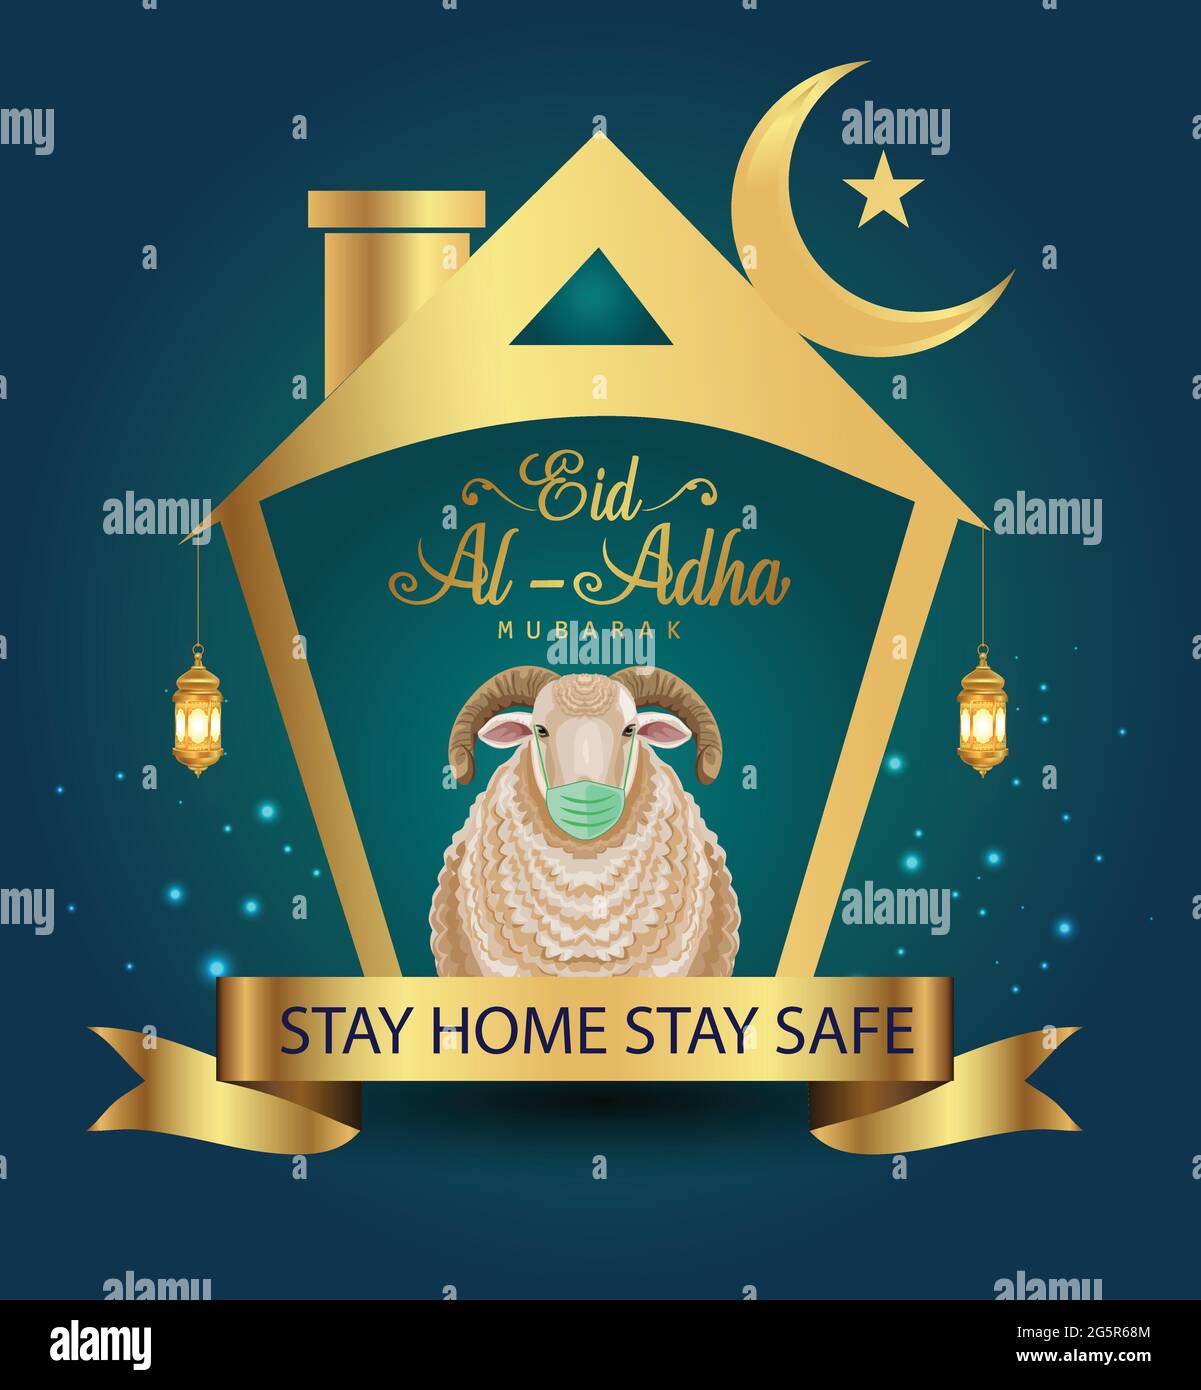 Der islamische Feiertag Eid Al Adha Mubarak mit Schafen, die eine medizinische Maske tragen. Design for Islam Festival Kurban Bayram Card or Poster. corona Virus covid-19 konz Stock Vektor